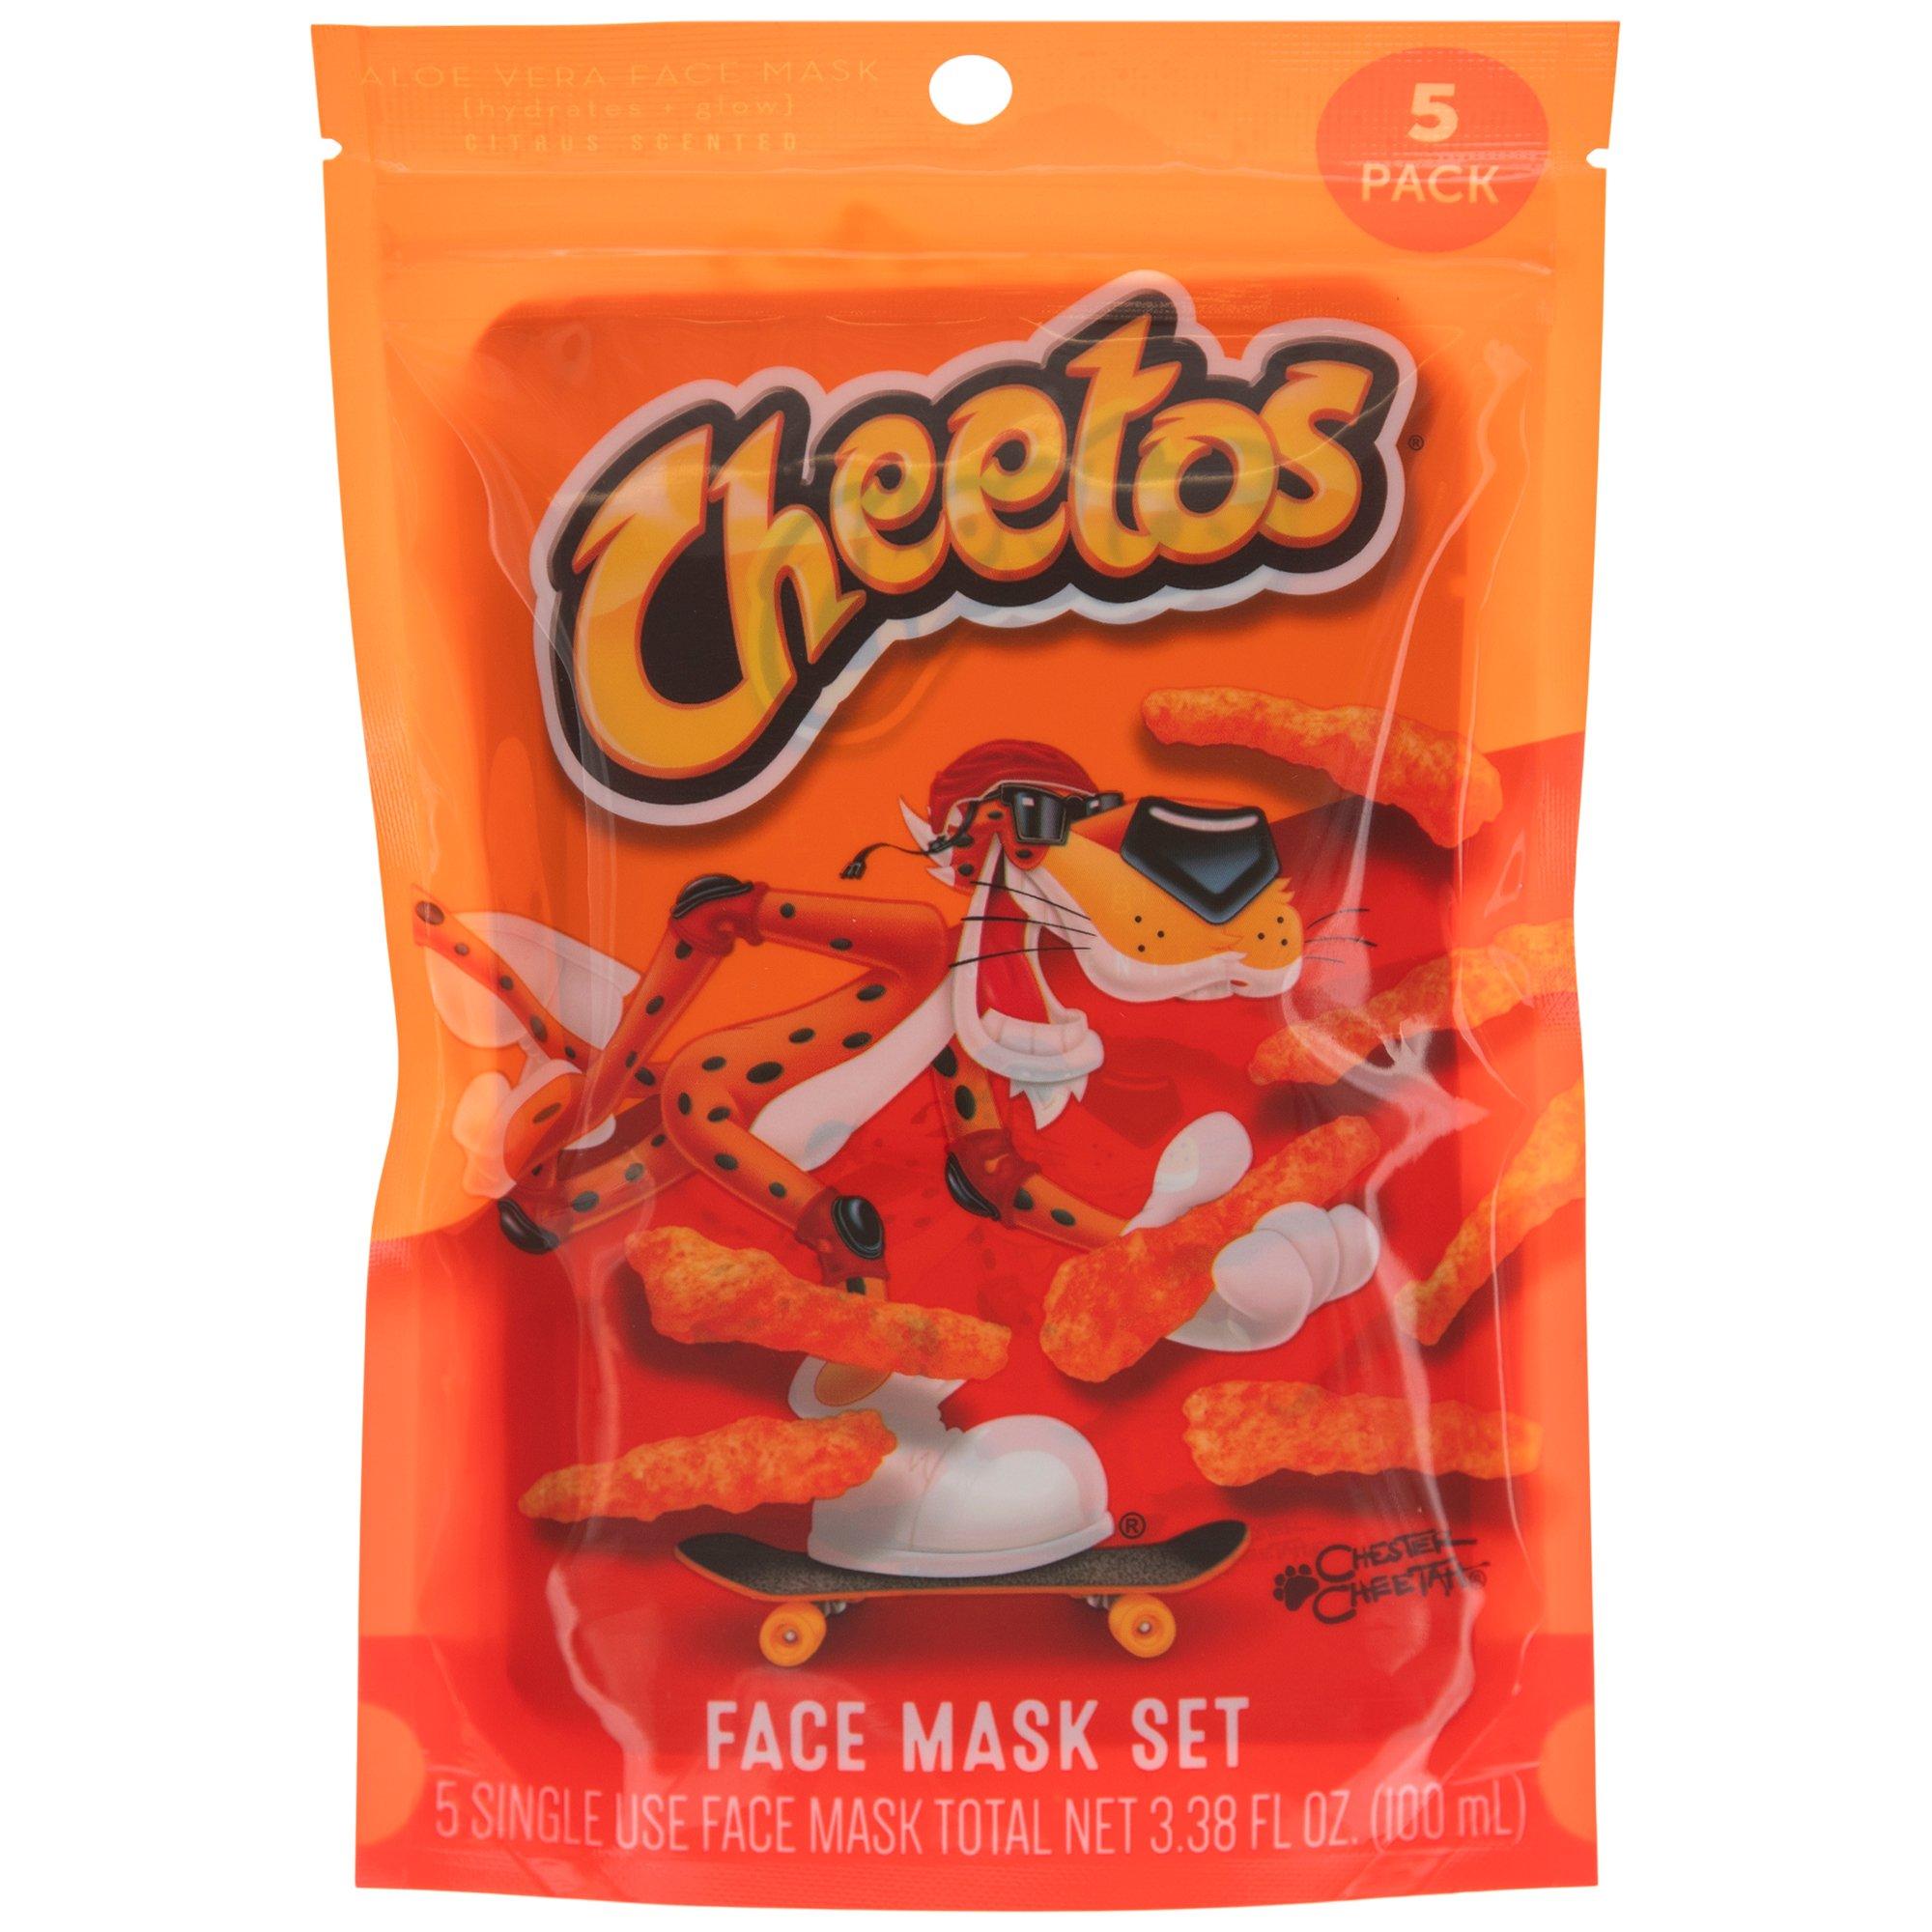 Cheetos Aloe Vera Face Masks Hobby Lobby 2350569 8032